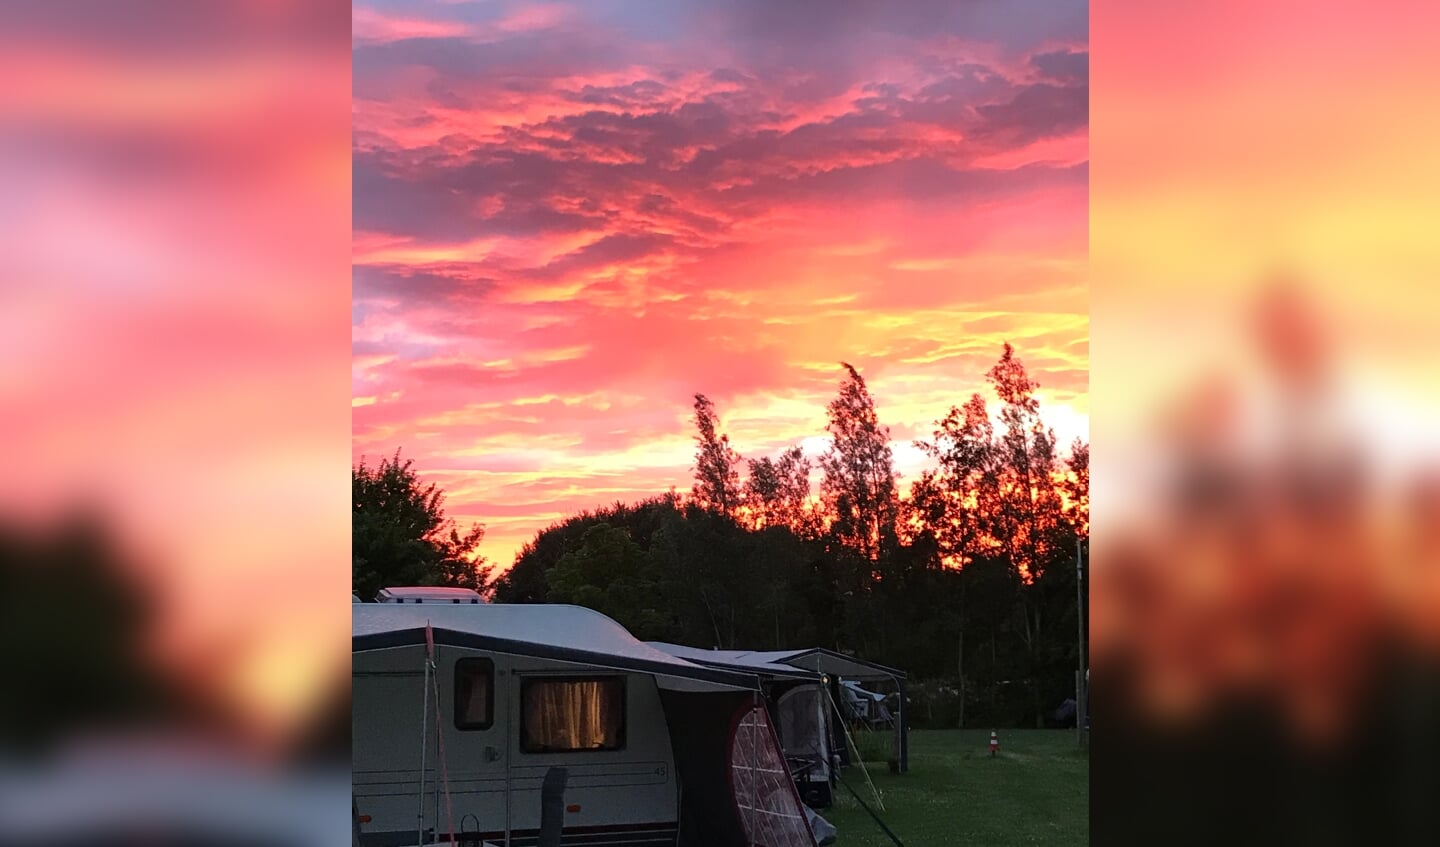 Deze foto gemaakt op zondag 19 juni van een heel bijzondere zonsondergang op camping Noorthey in Leidschendam.